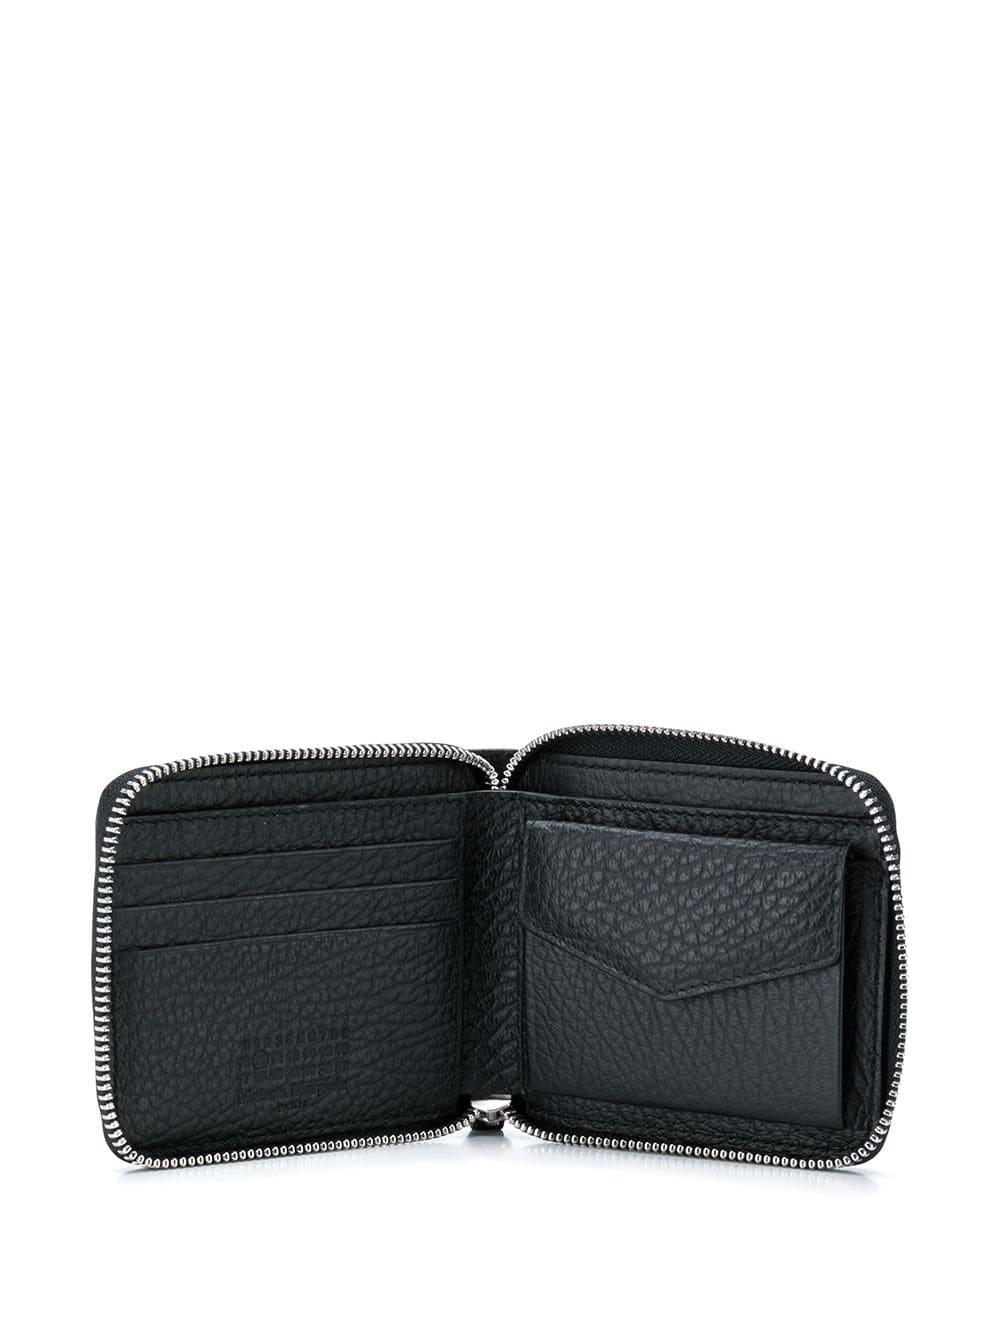 Maison Margiela Leather Zip-around Wallet in Black - Lyst